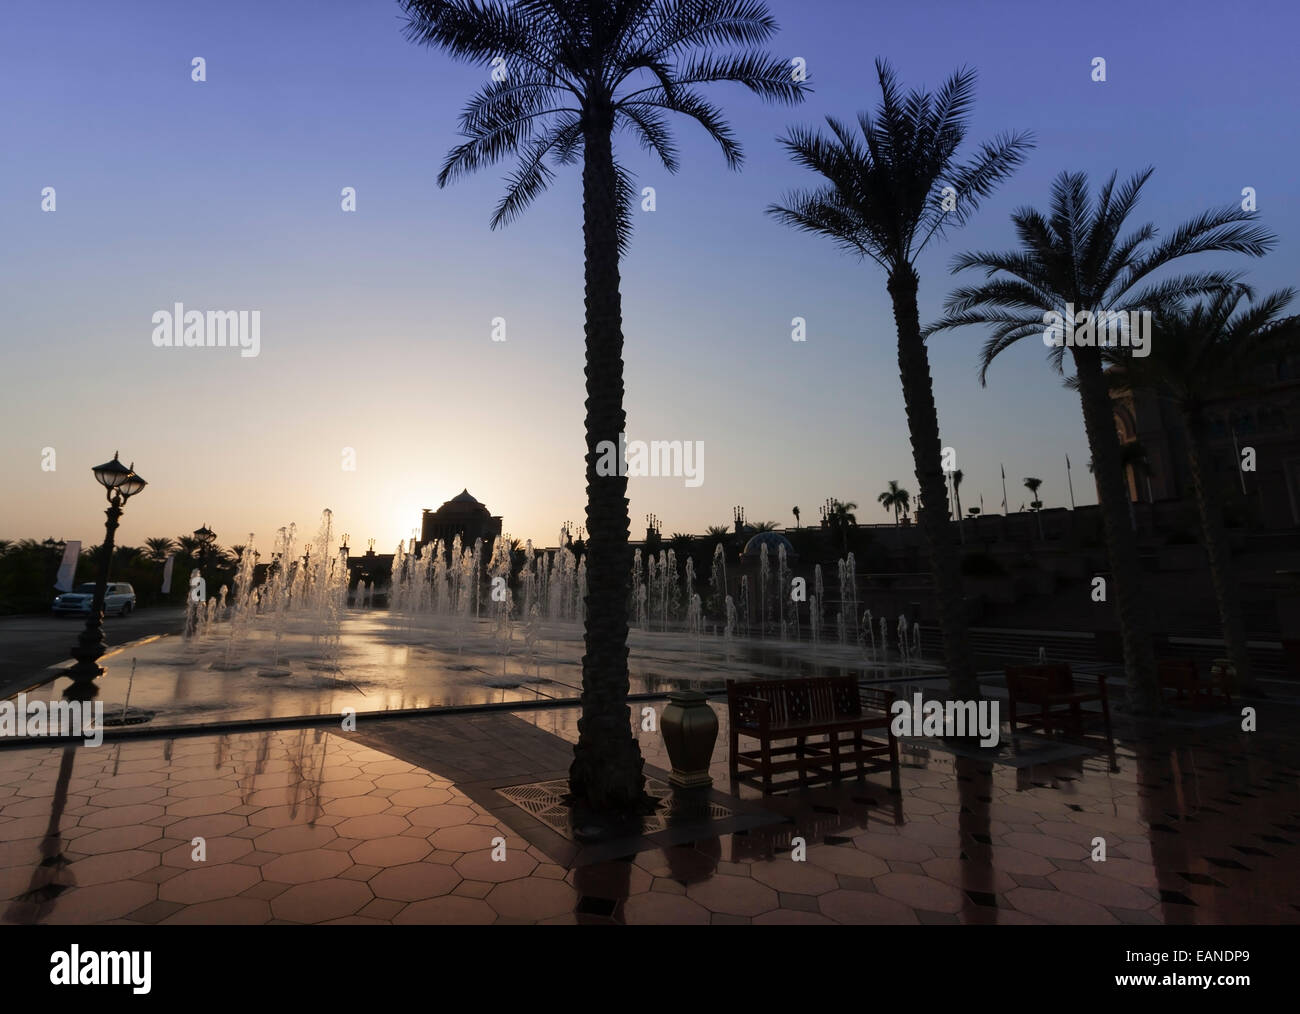 The Emirates Palace Hotel, Abu Dhabi, United Arab Emirates. Fountains at sunset. Stock Photo